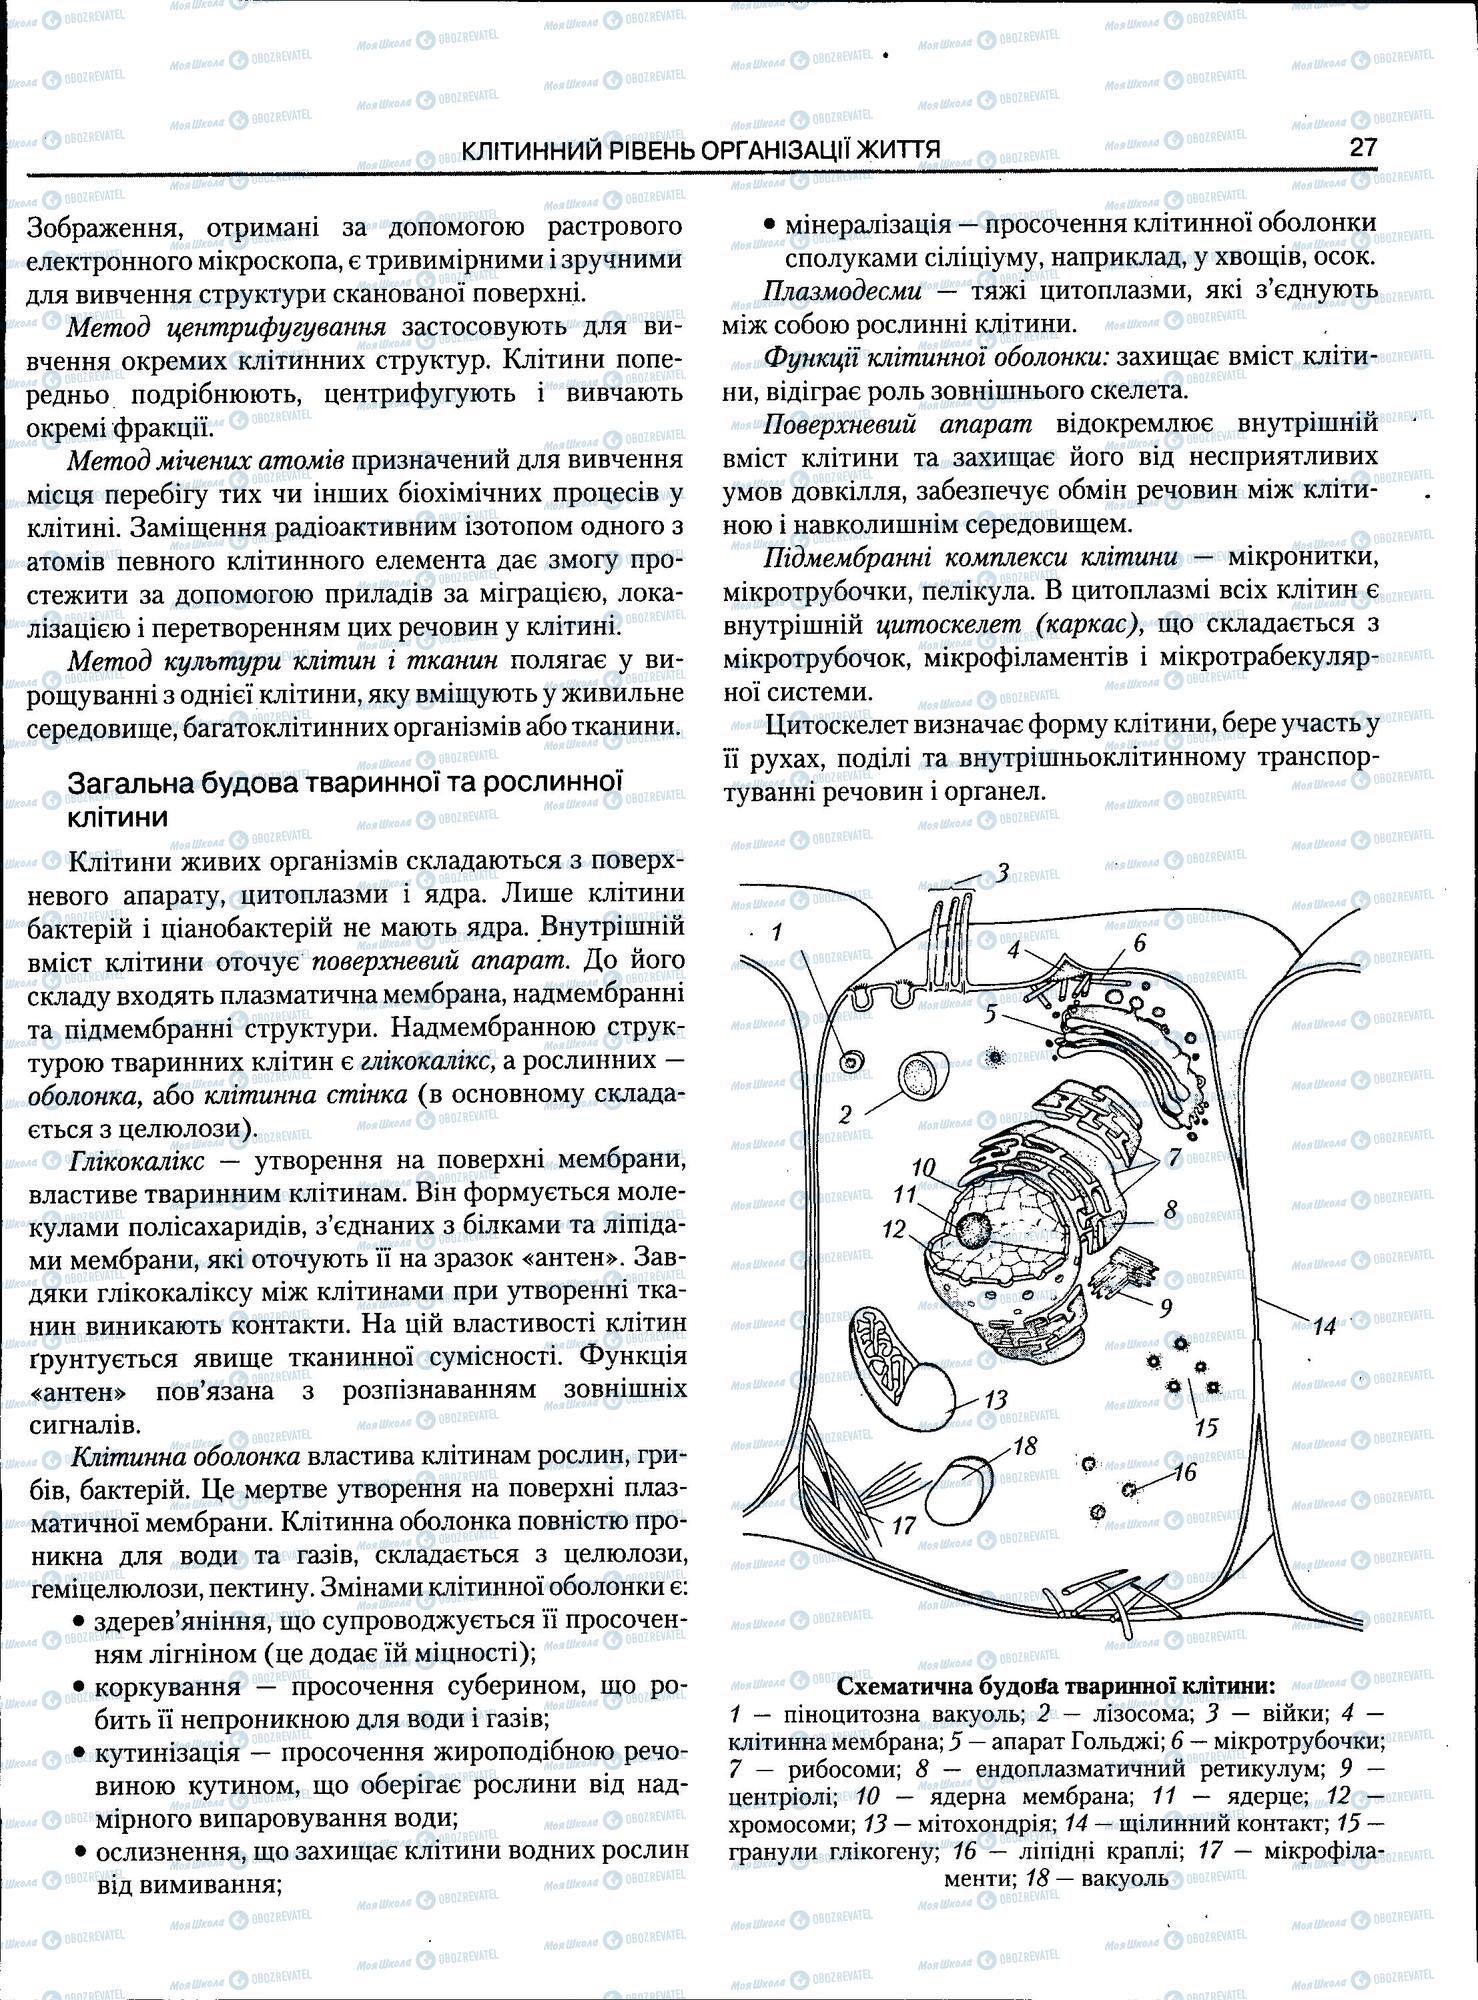 ЗНО Биология 11 класс страница 27